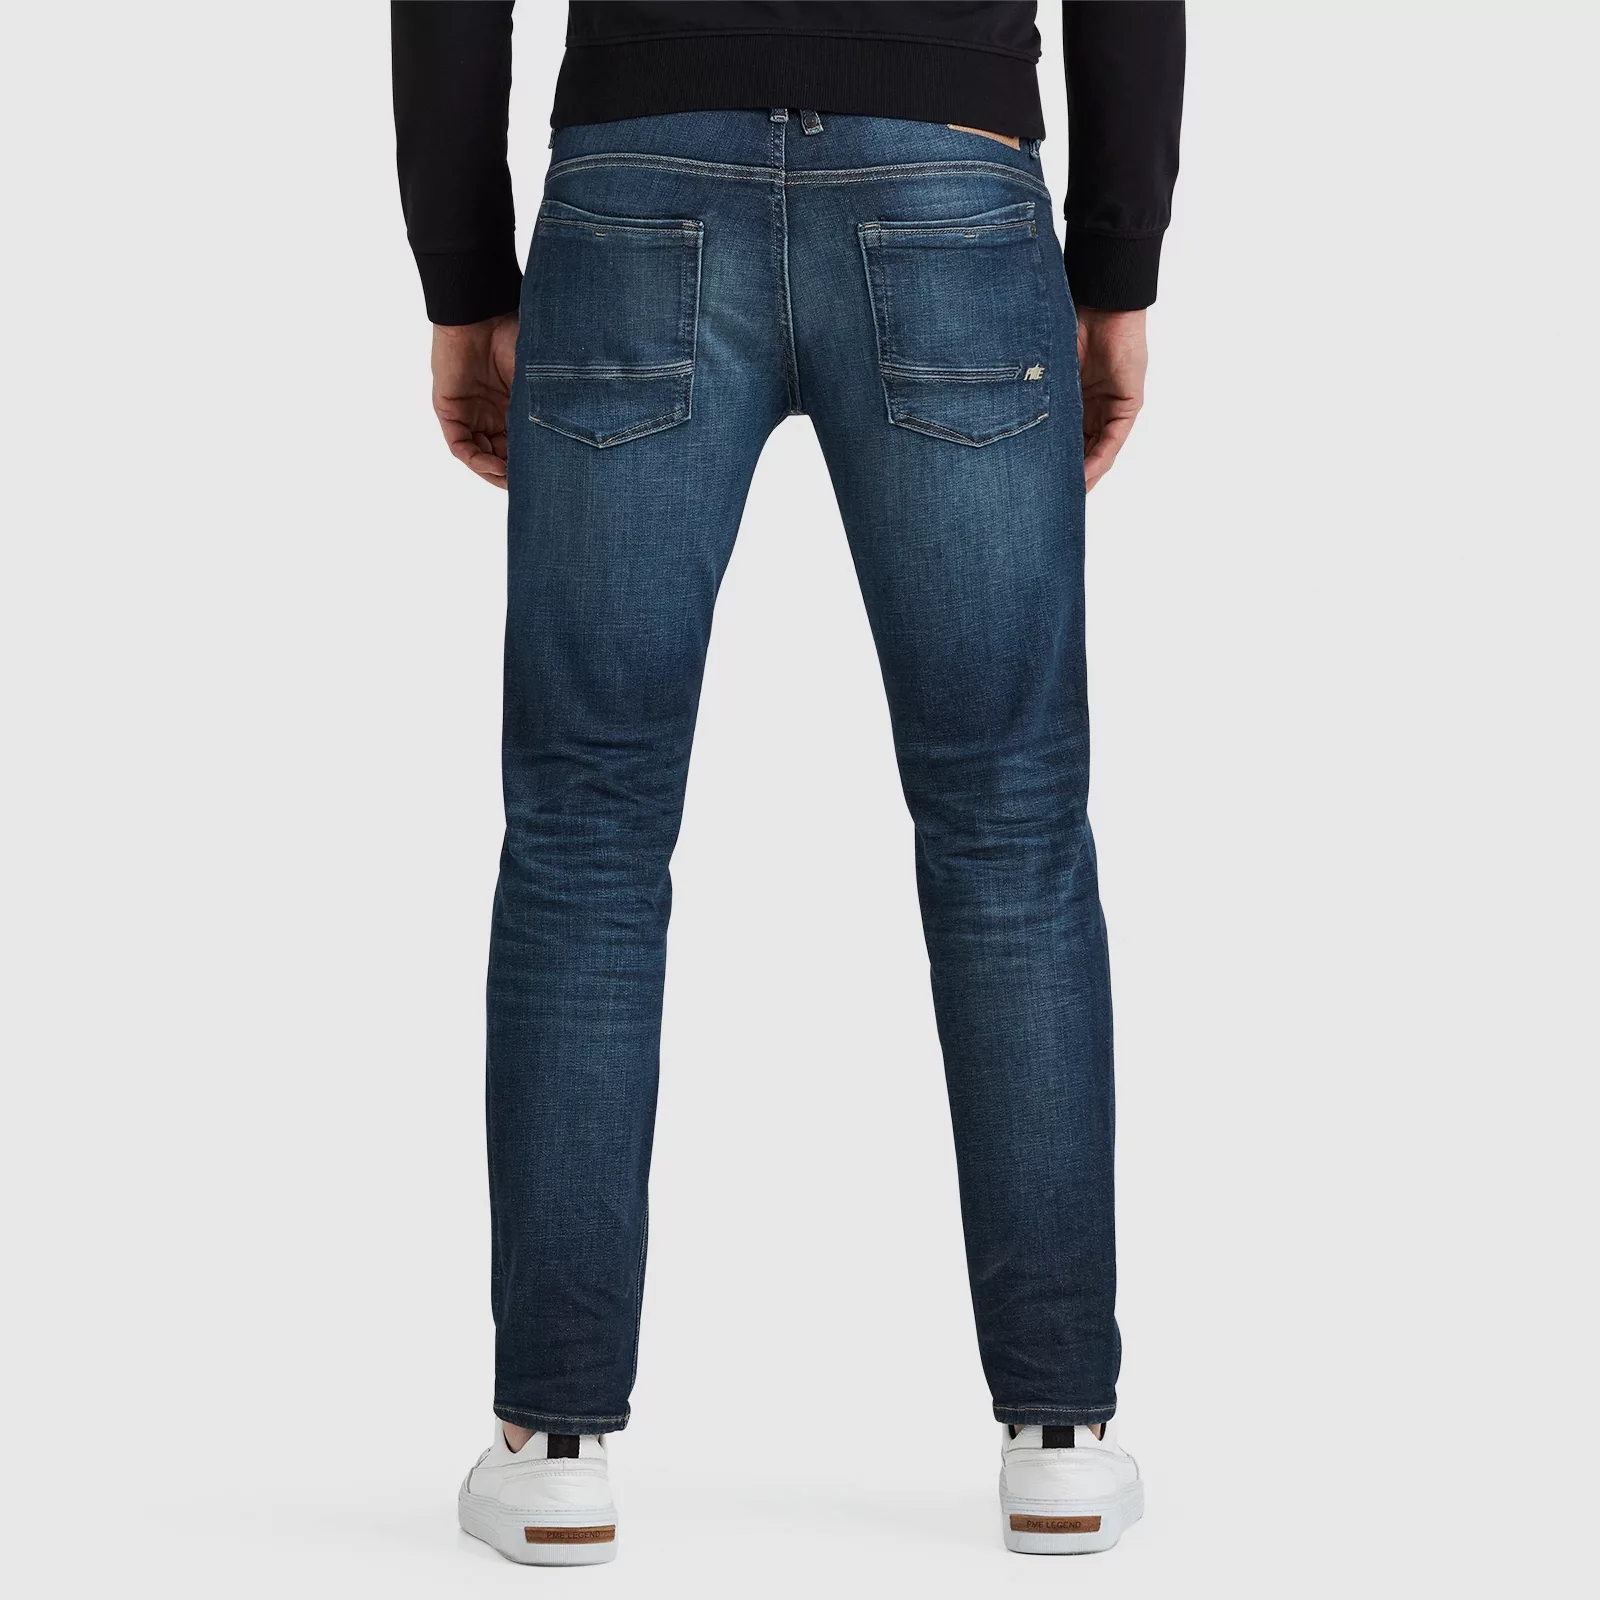 PME Legend Commander 3.0 Jeans Blau DBF - Größe W 38 - L 34 günstig online kaufen